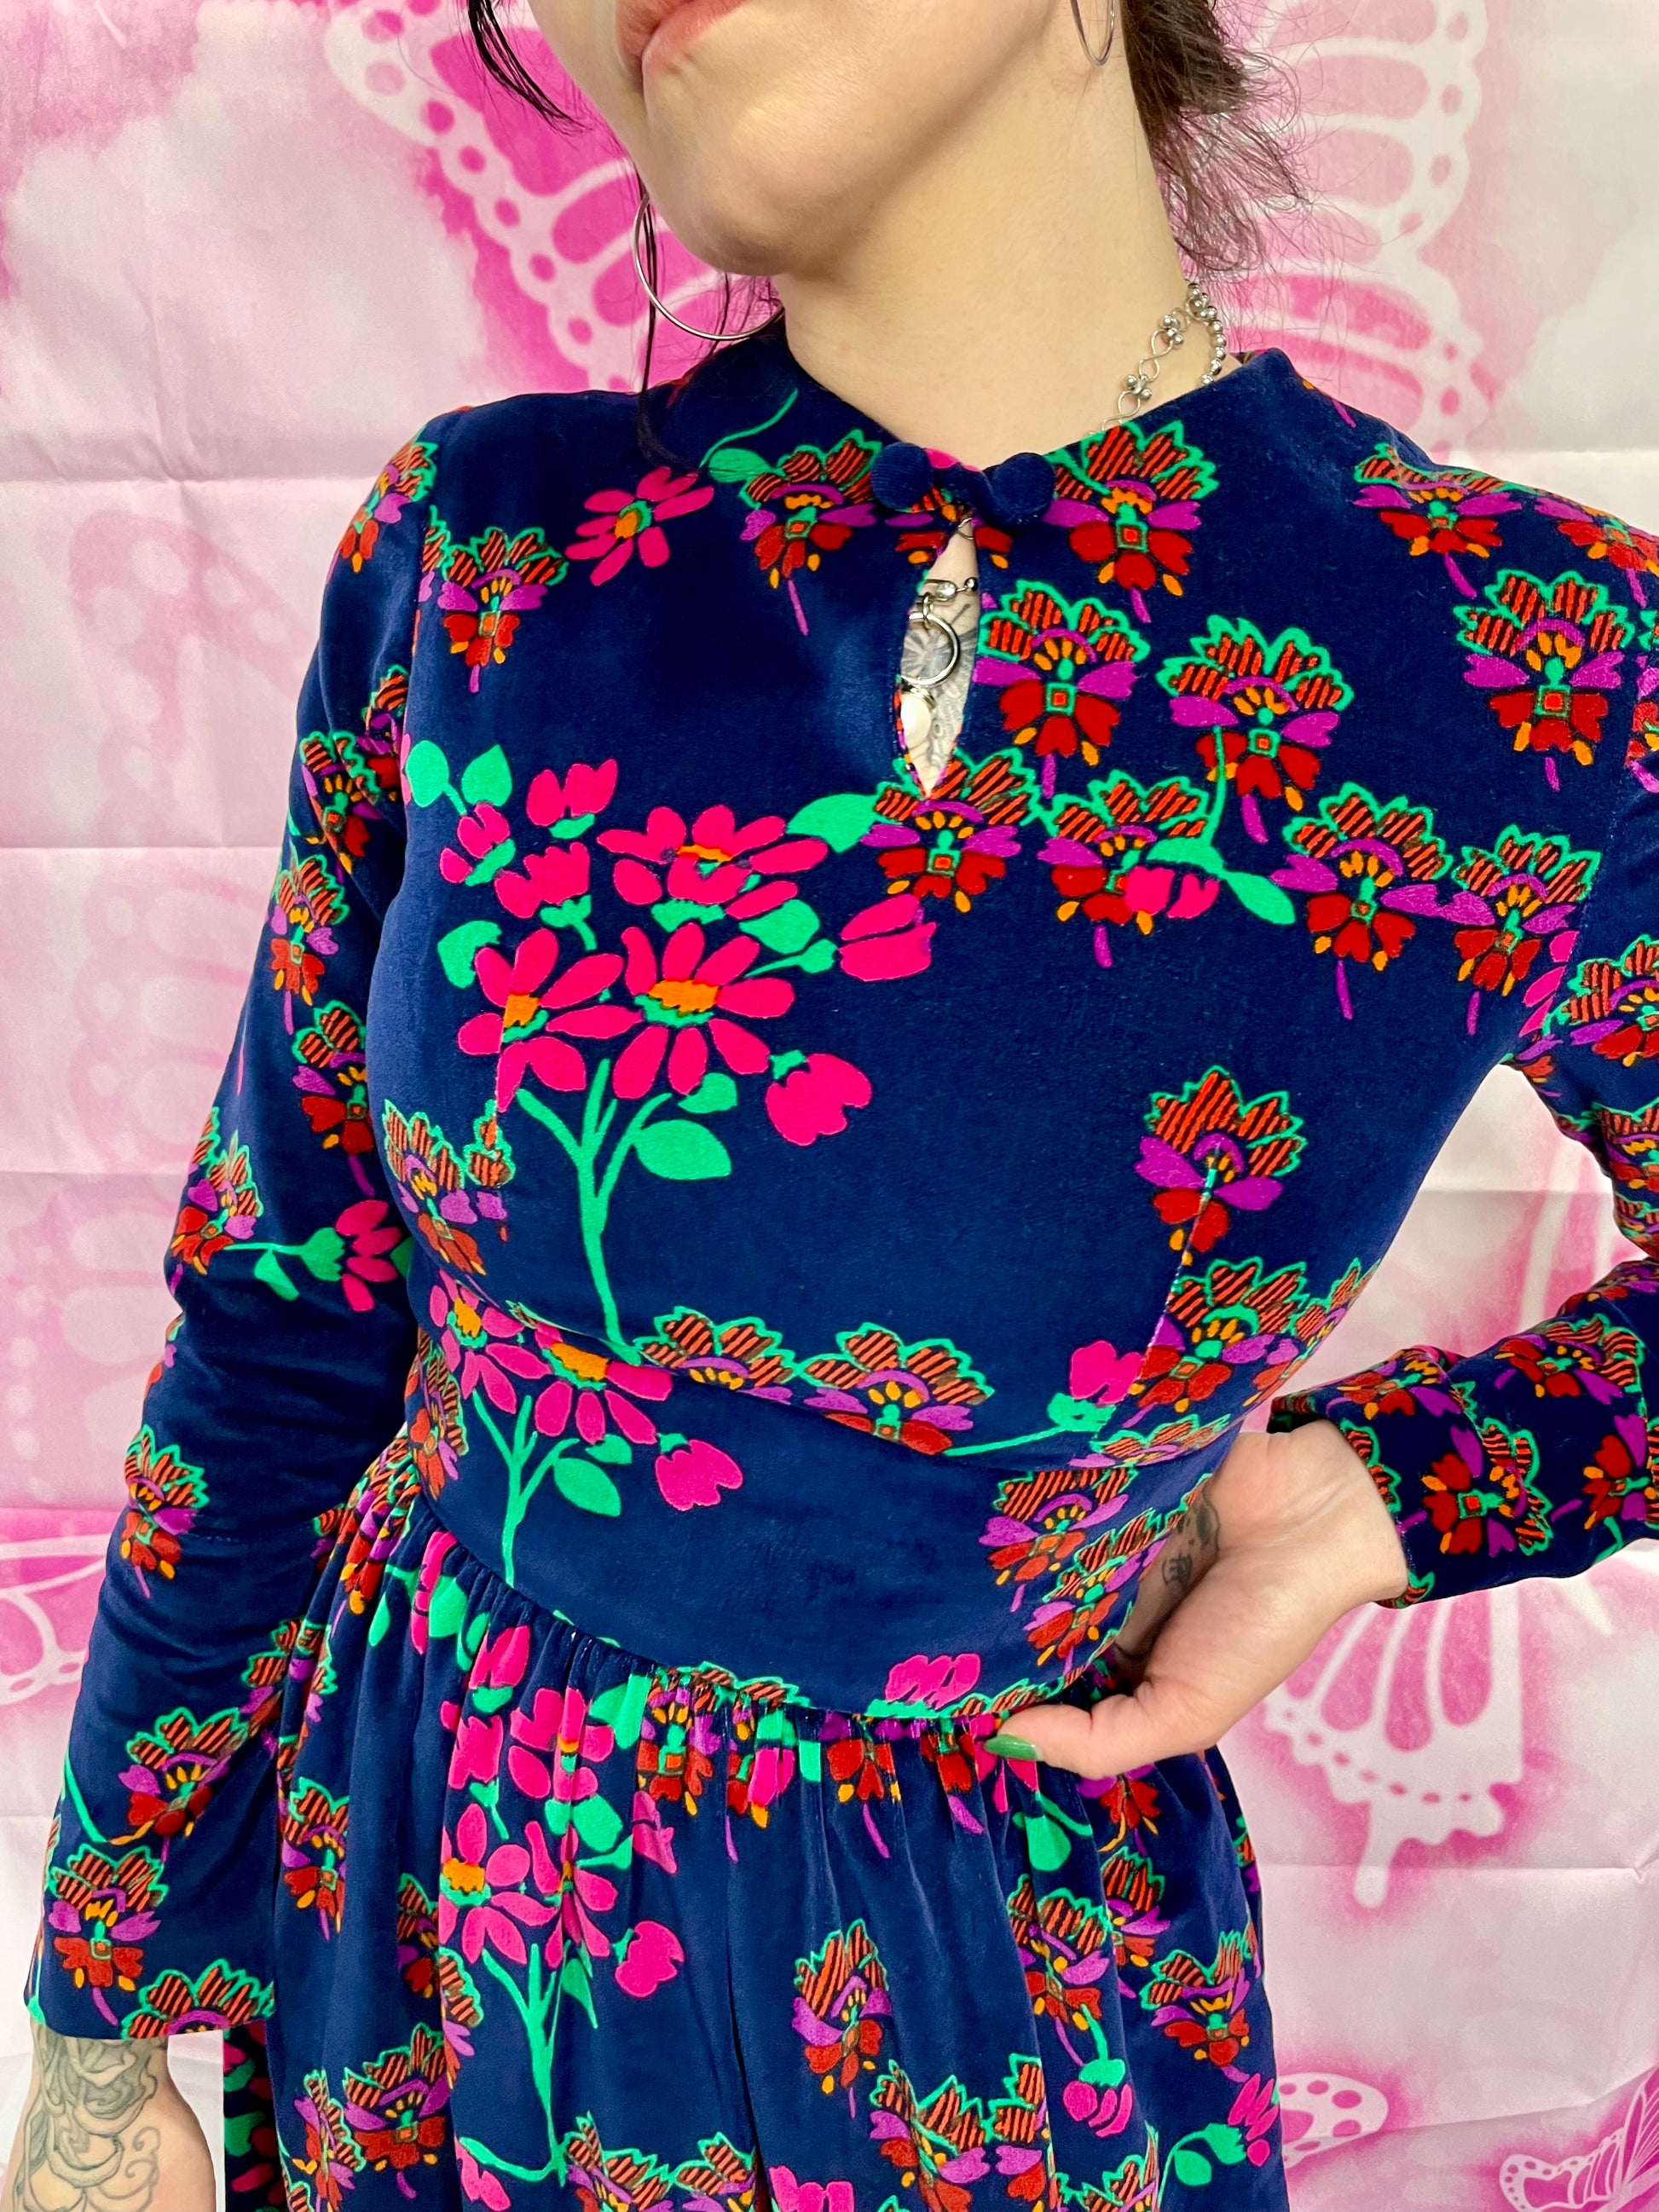 70's Floral Maxi Dress